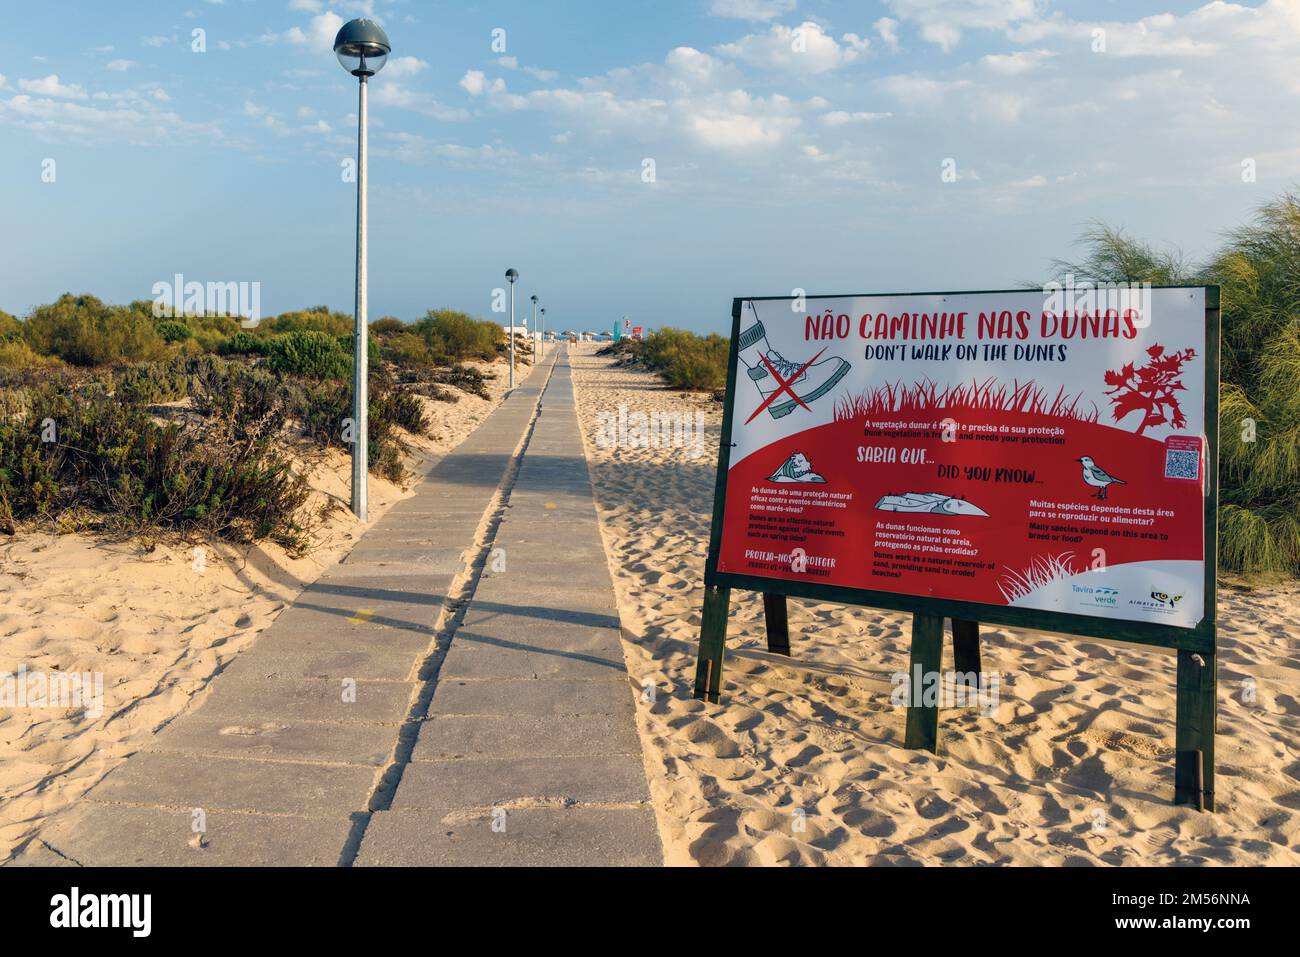 Tavira, Algarve, Portugal. Zweisprachiger Hinweis auf Portugiesisch und Englisch auf Ilha de Tavira/Tavira Island, in dem die Menschen aufgefordert werden, nicht in den Sanddünen zu laufen. D Stockfoto